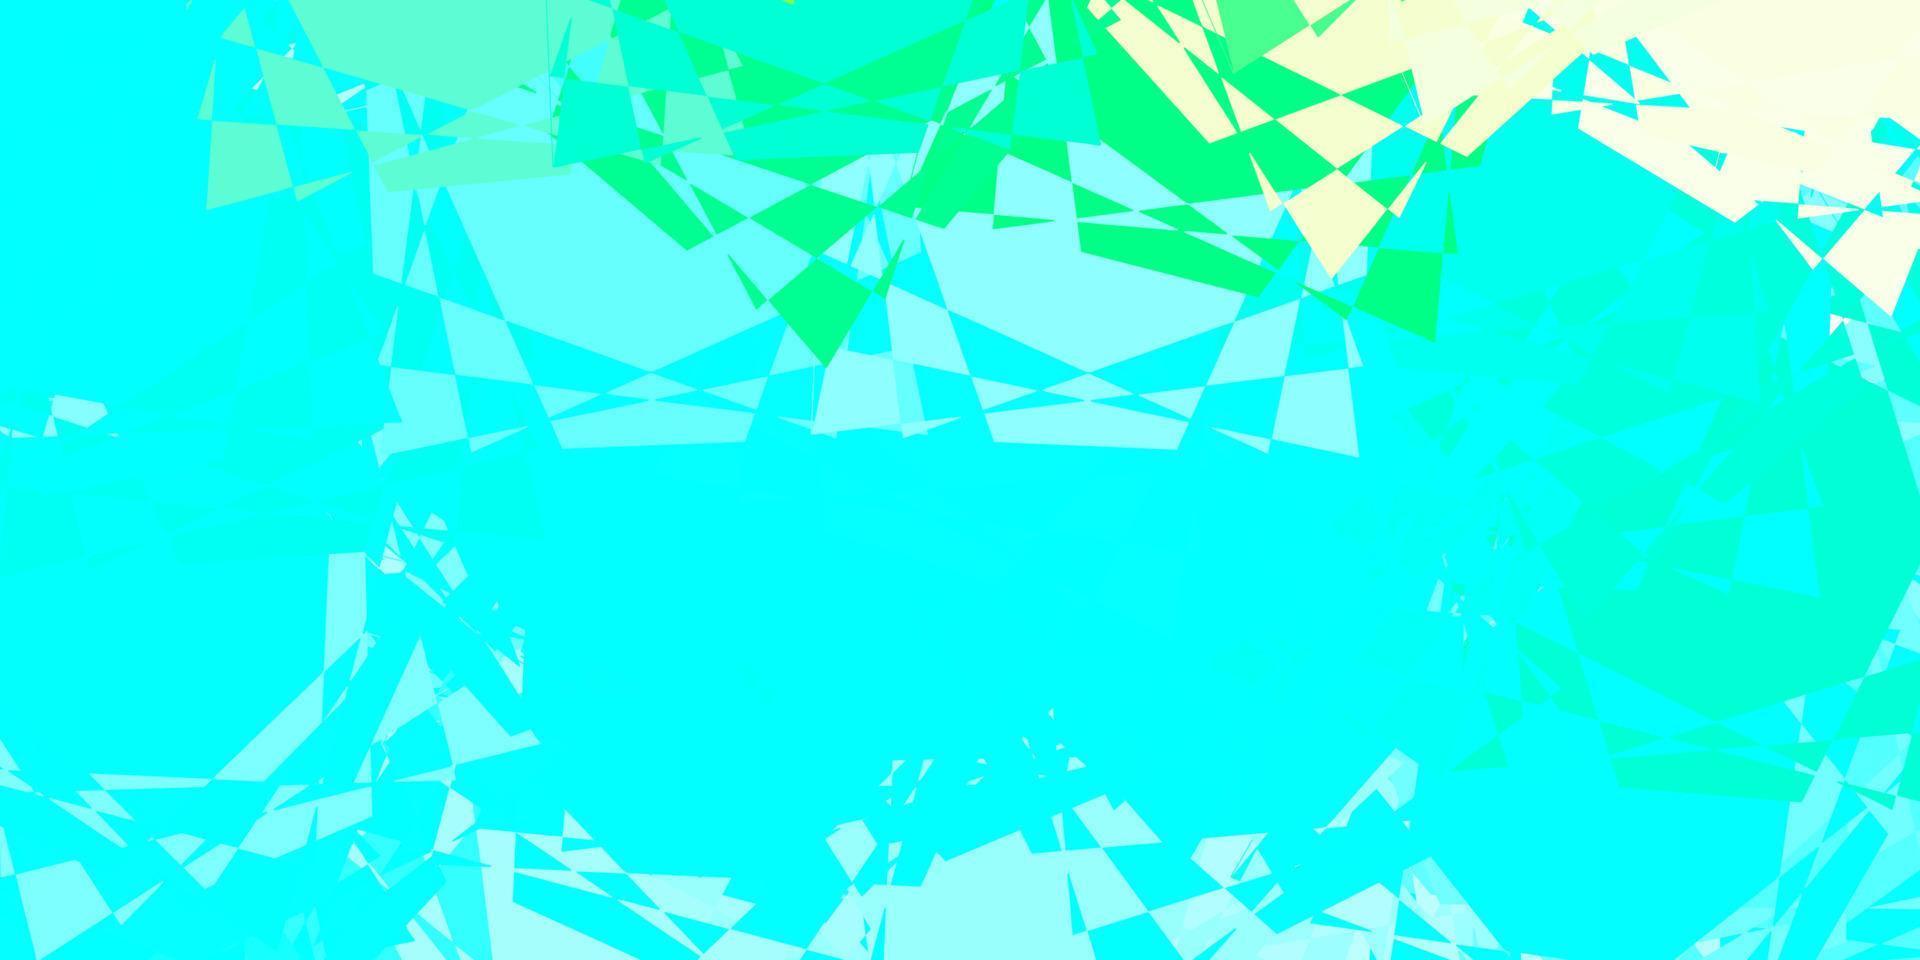 texture vettoriale azzurro, verde con triangoli casuali.